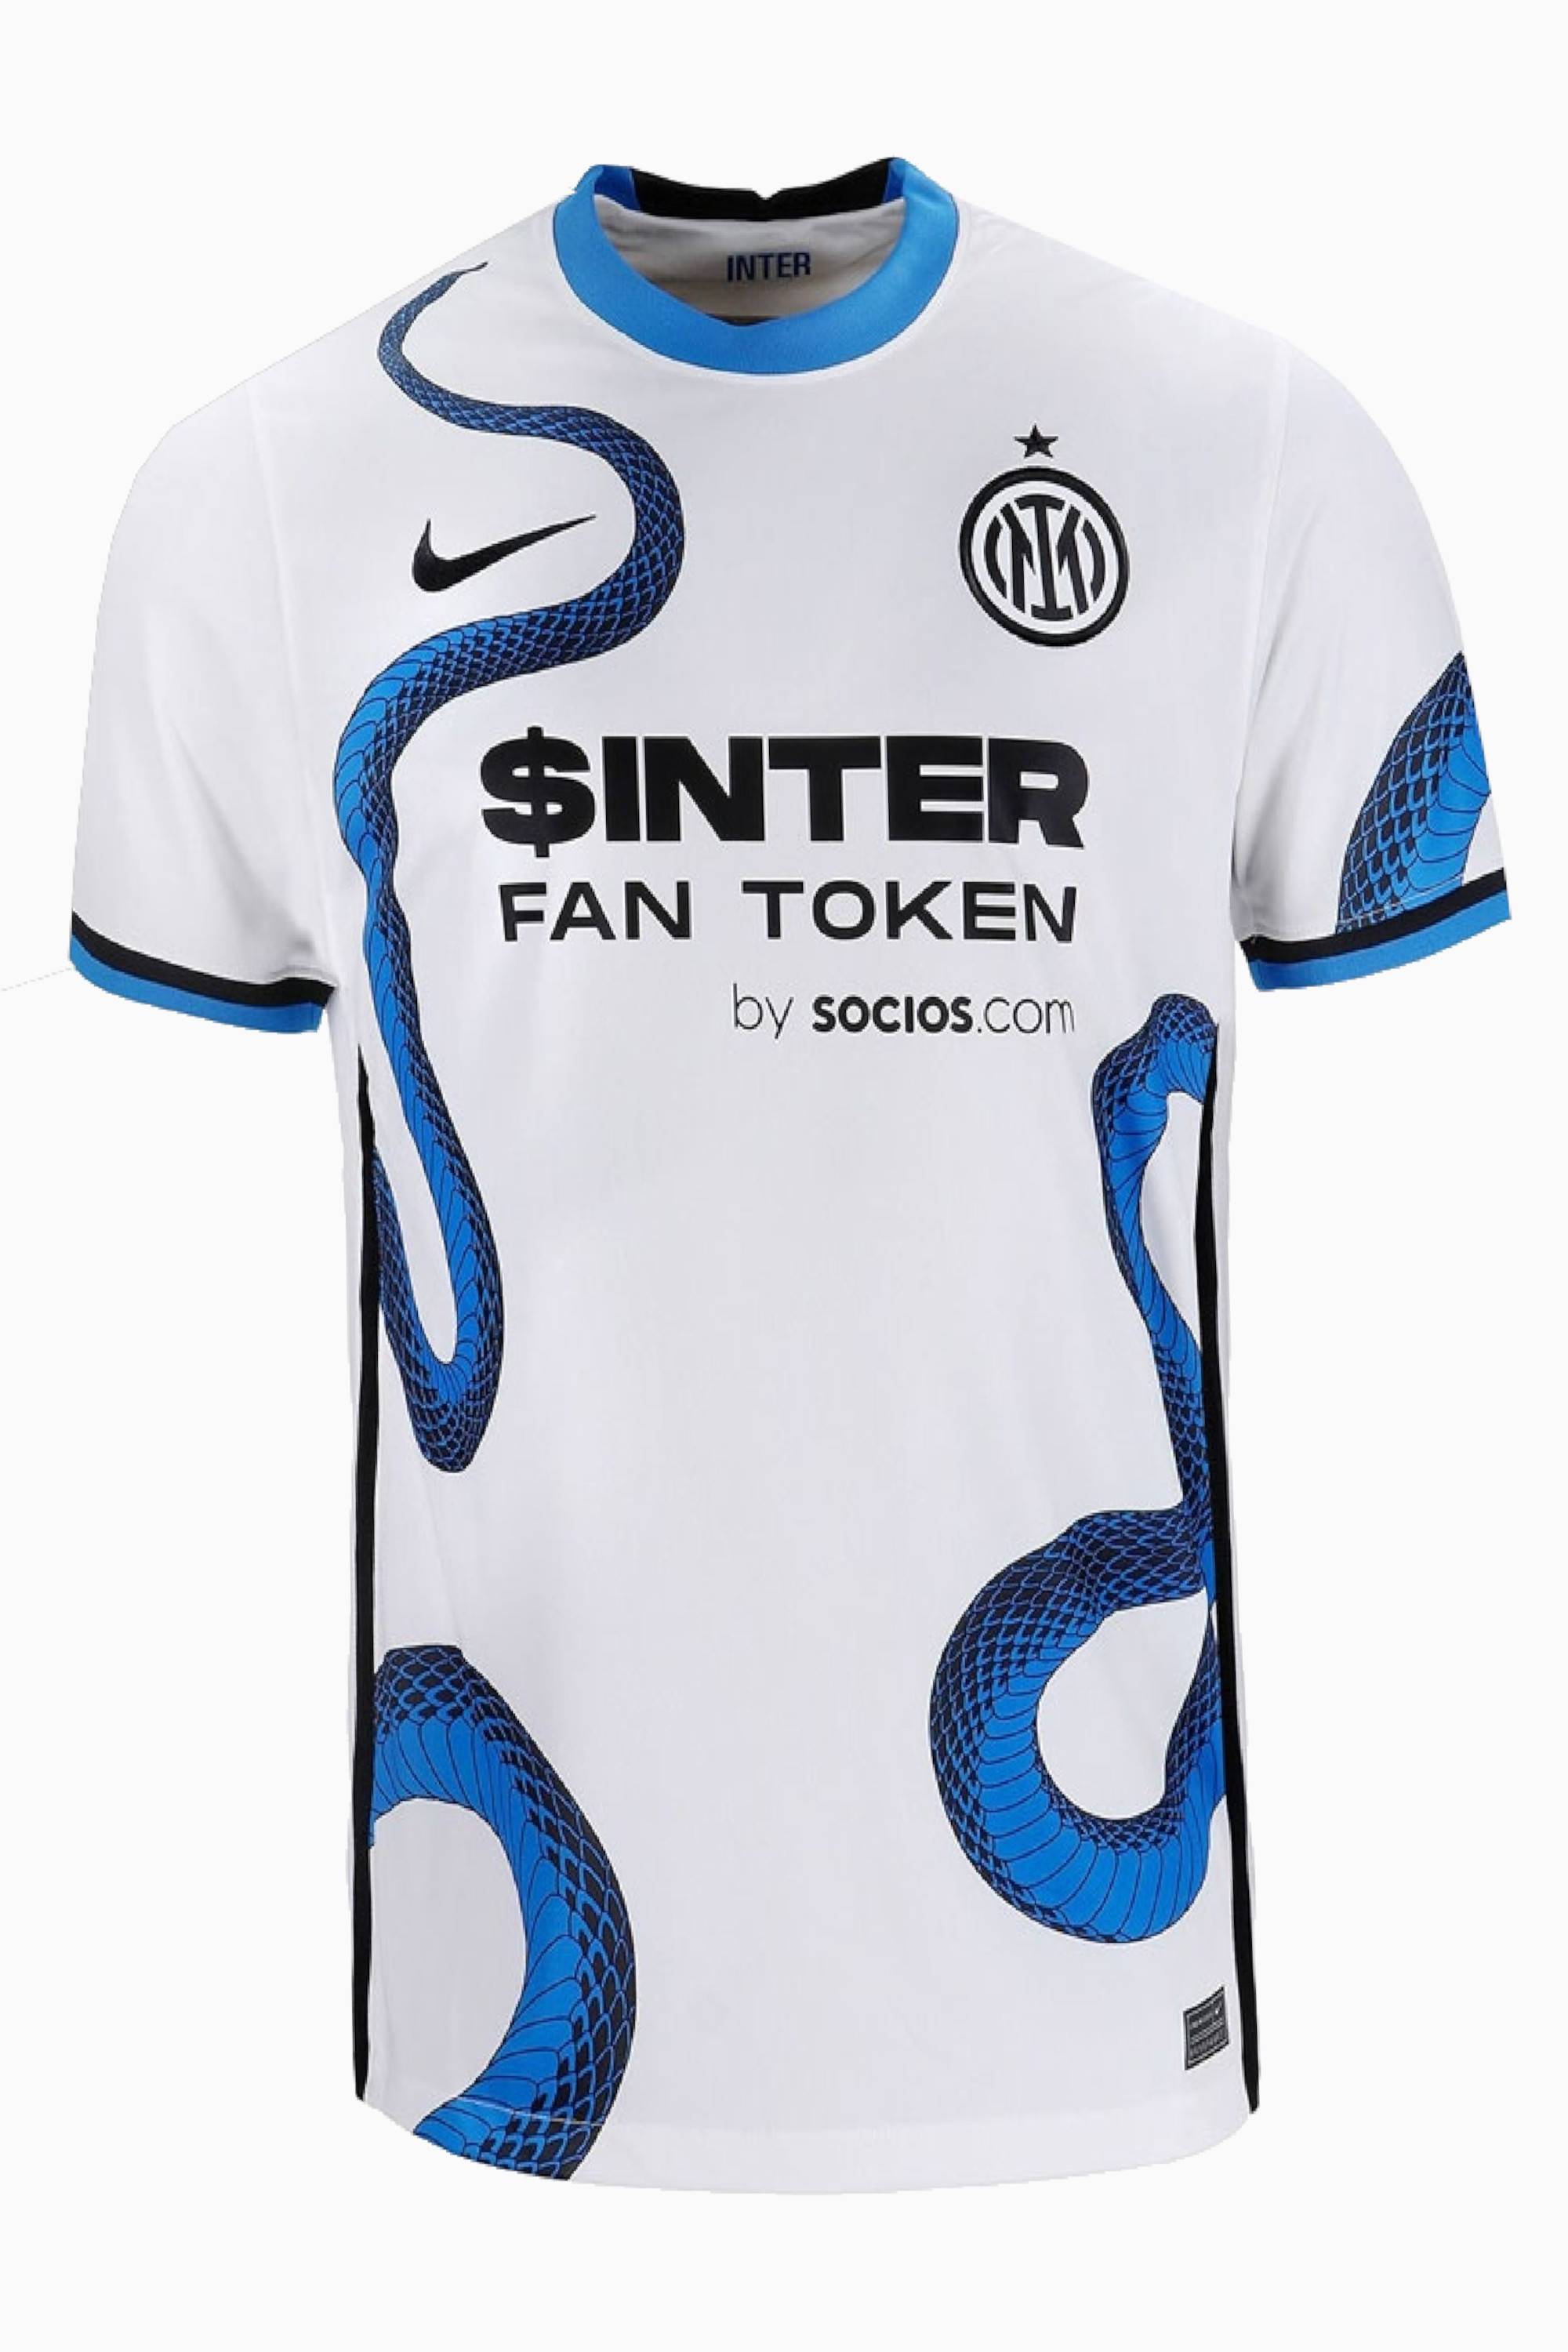 Inter t. Nike Inter футболка. Nike Inter Milan футболка.